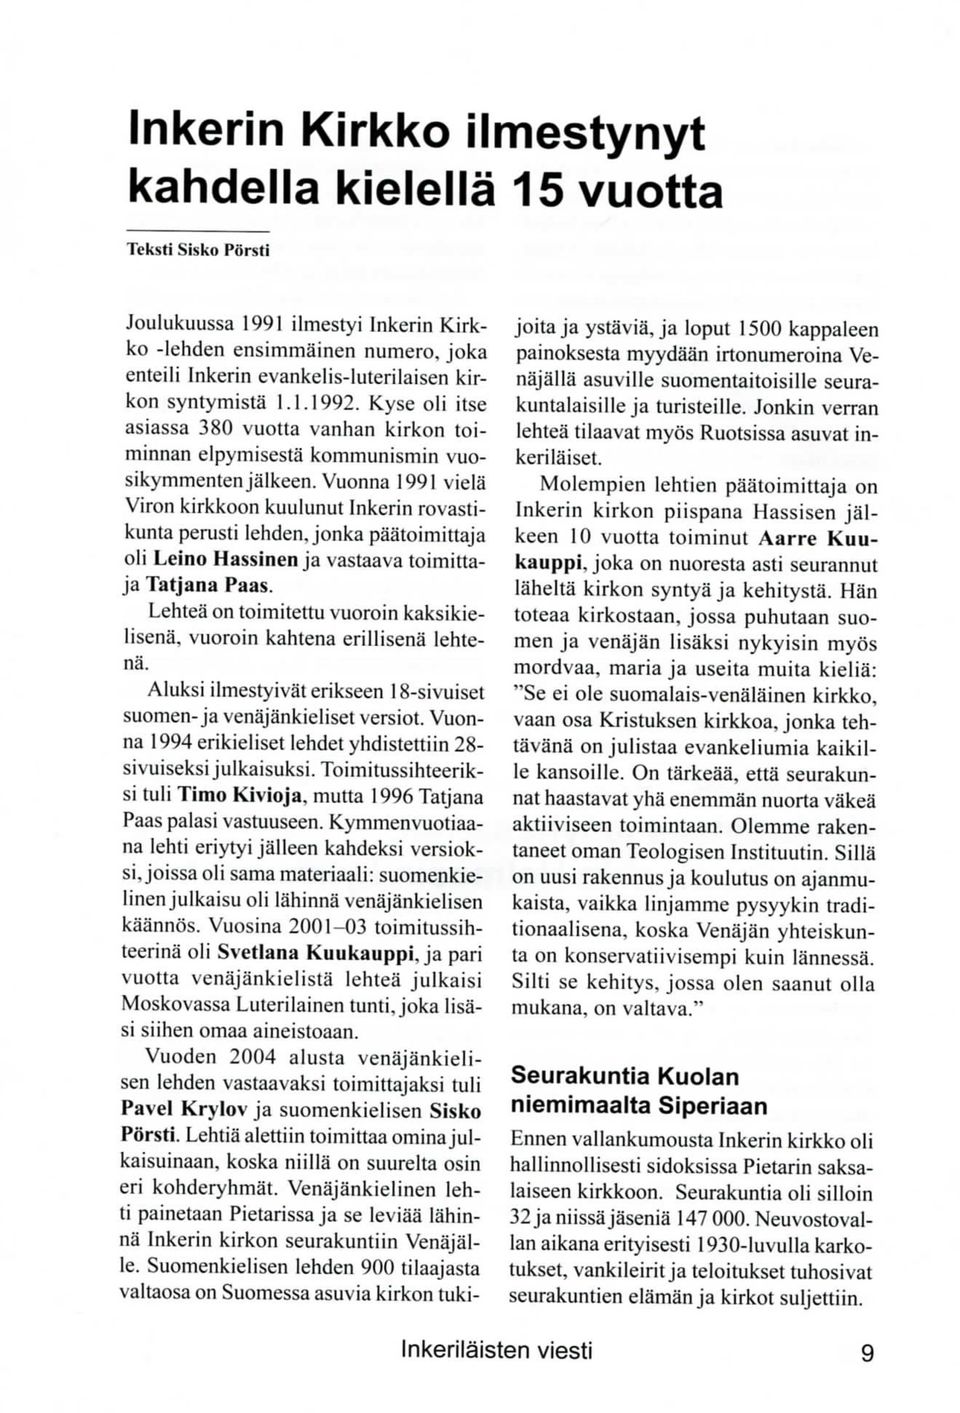 Vuonna 1991 viela Viron kirkkoon kuulunut Inkerin rovastikunta perusti lehden, jonka paatoimittaja oli Leino Hassinen ja vastaava toimittaja Tatjana Paas.